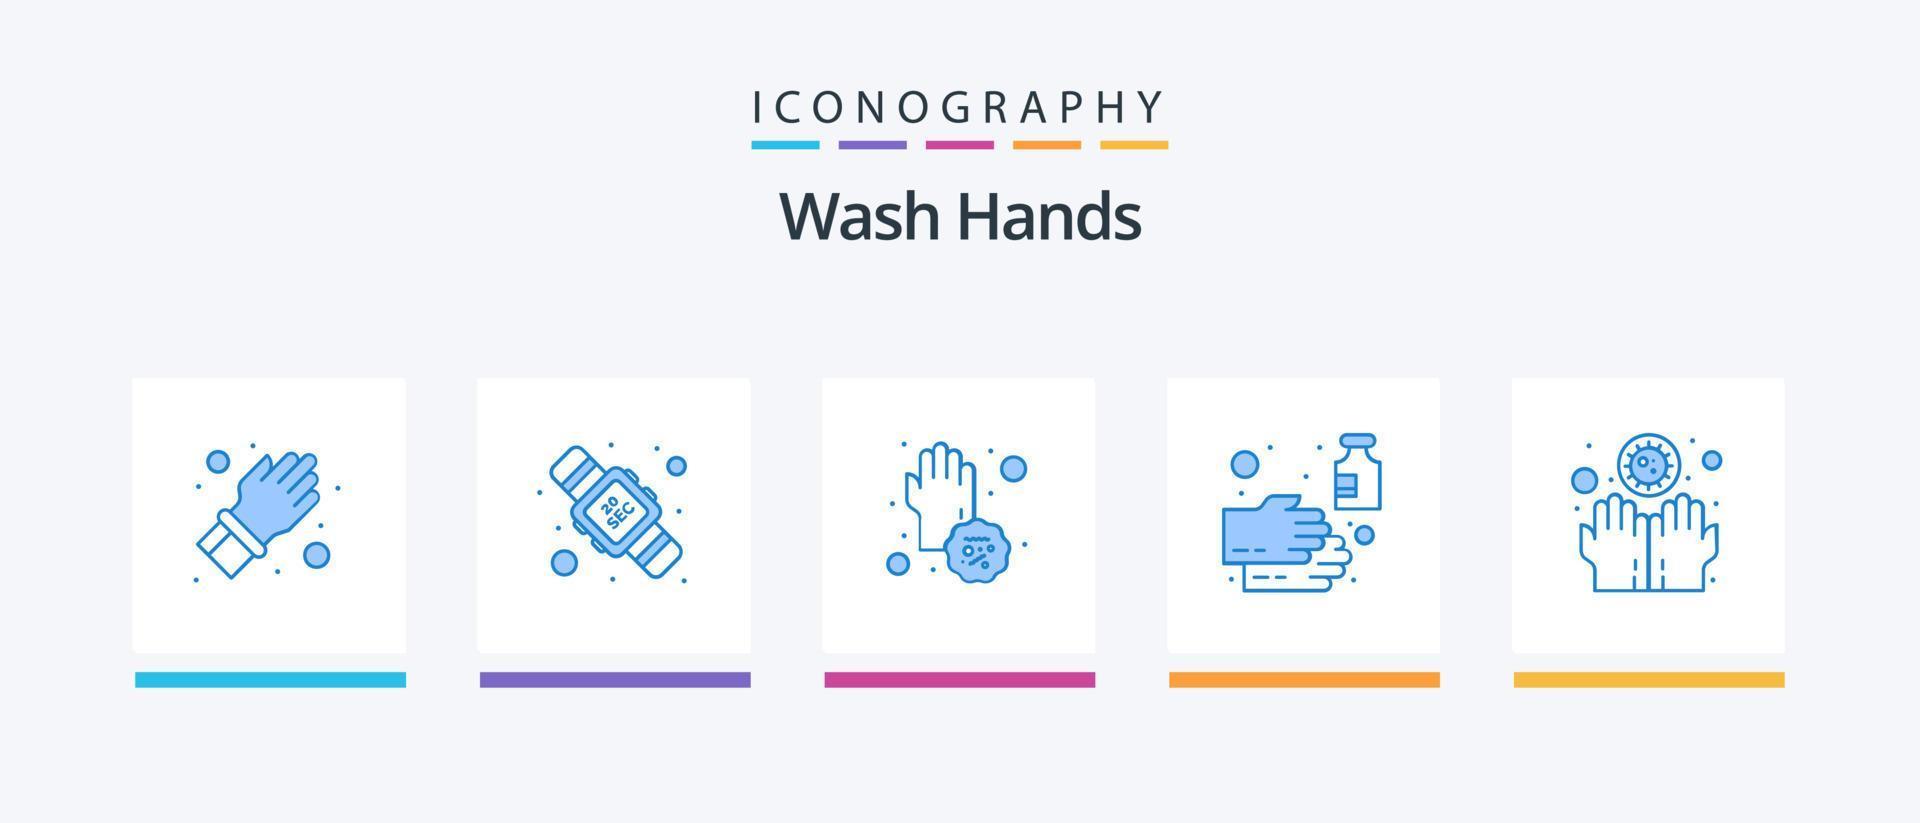 lávese las manos paquete de iconos azul 5 que incluye desinfectante. jabón. virus. mano. las manos. diseño de iconos creativos vector